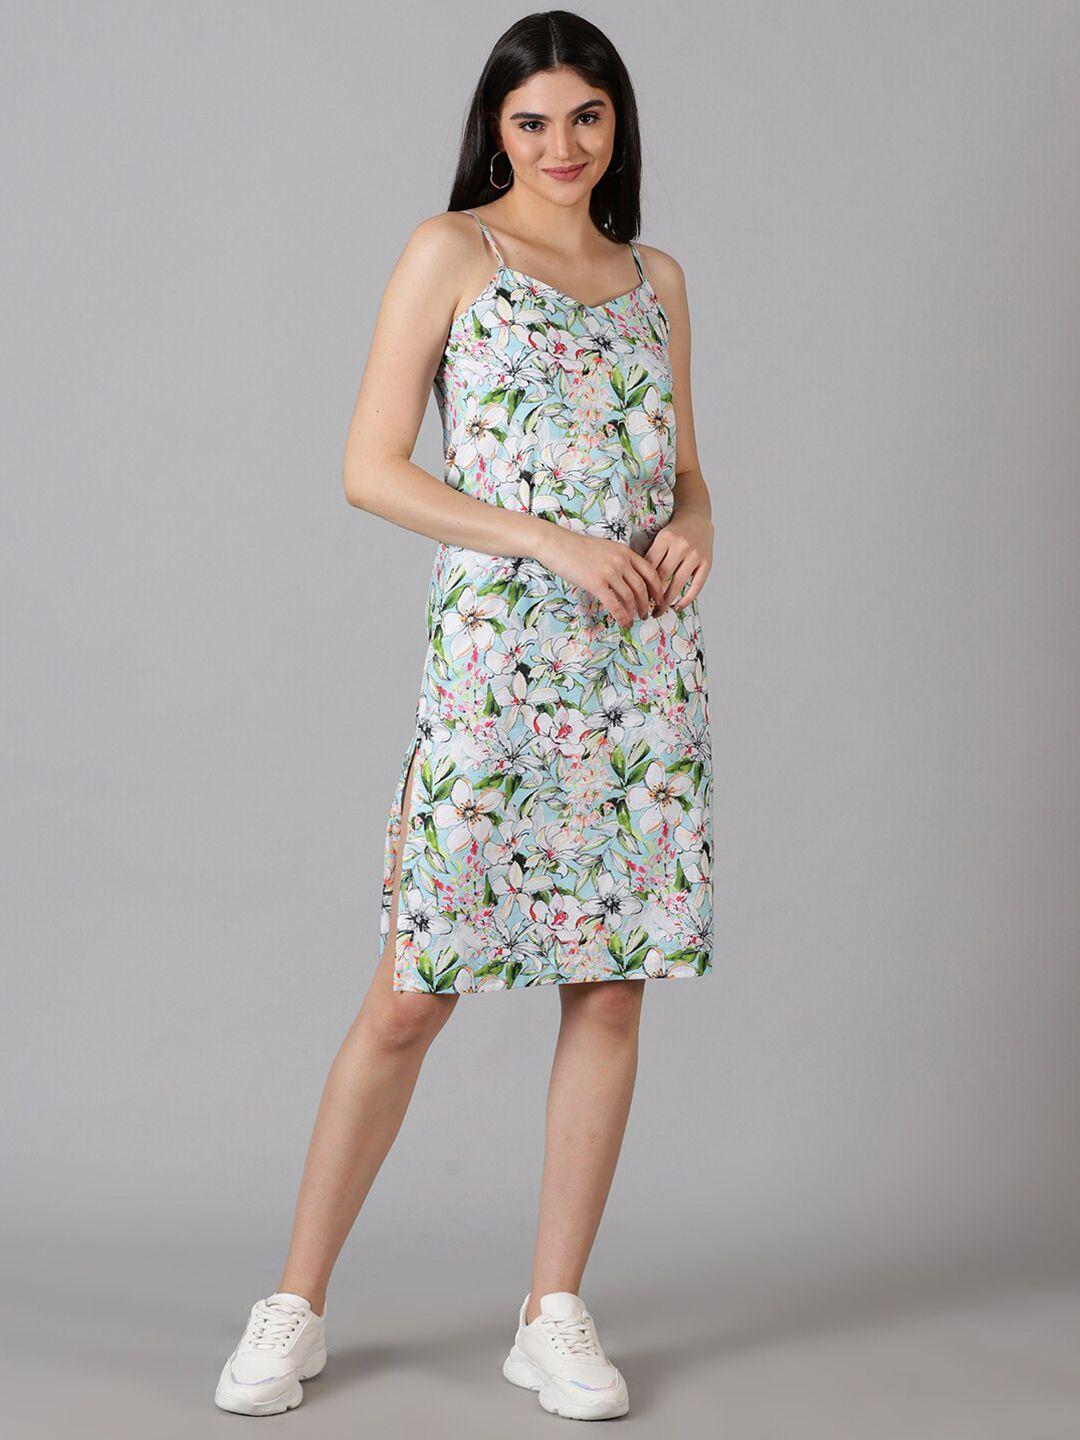 jilmil floral printed shoulder strap side slits cotton sheath dress